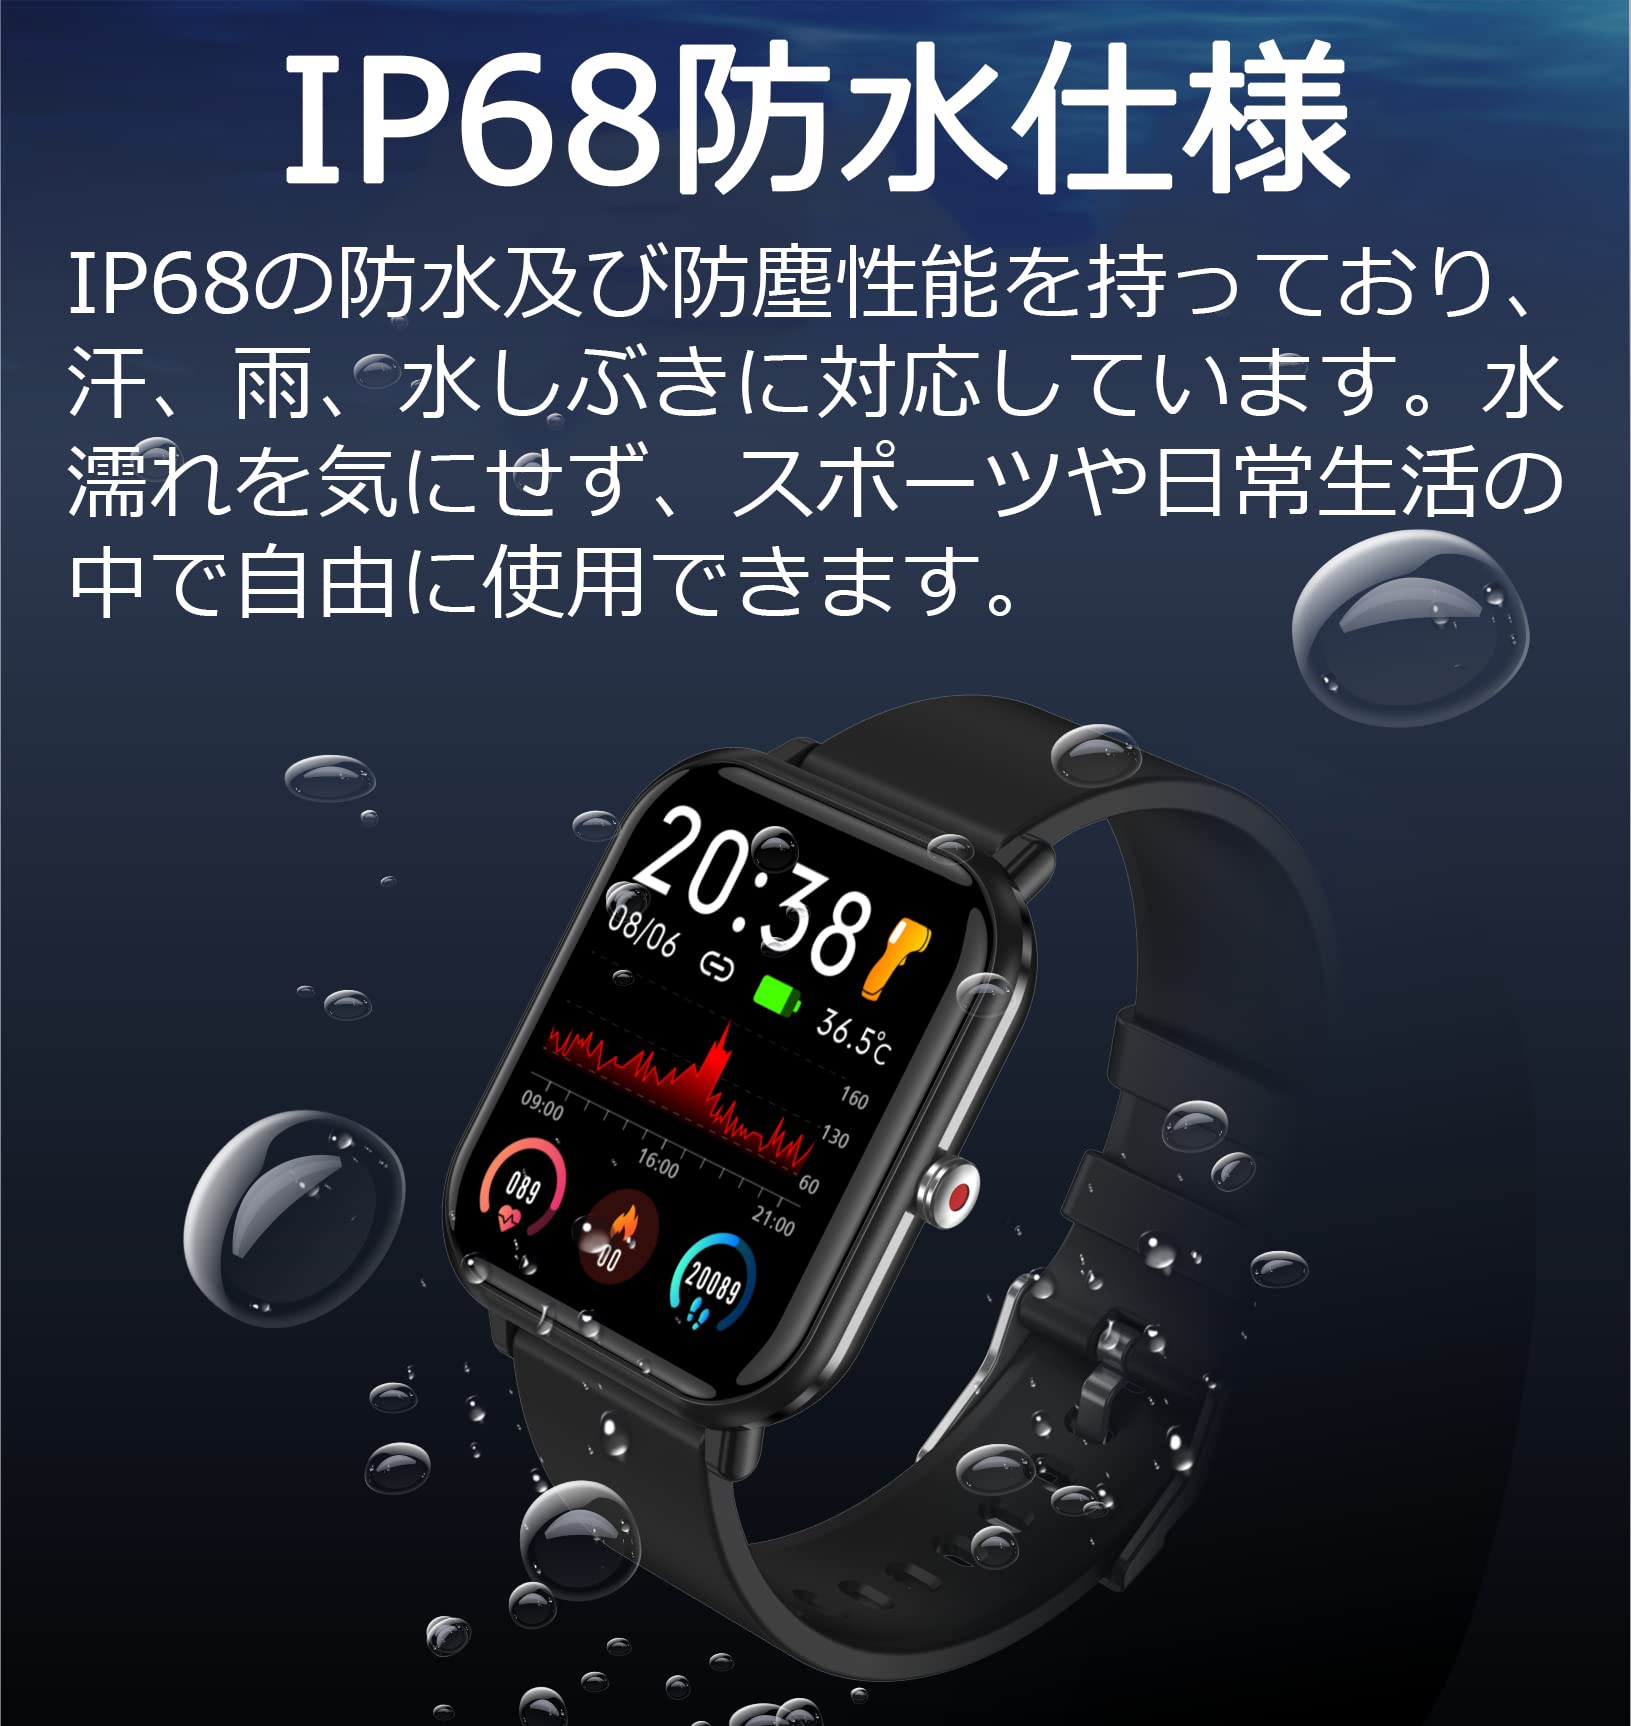 大画面 スマートウォッチ 腕時計 着信通知 iPhone対応 Android対応 通販